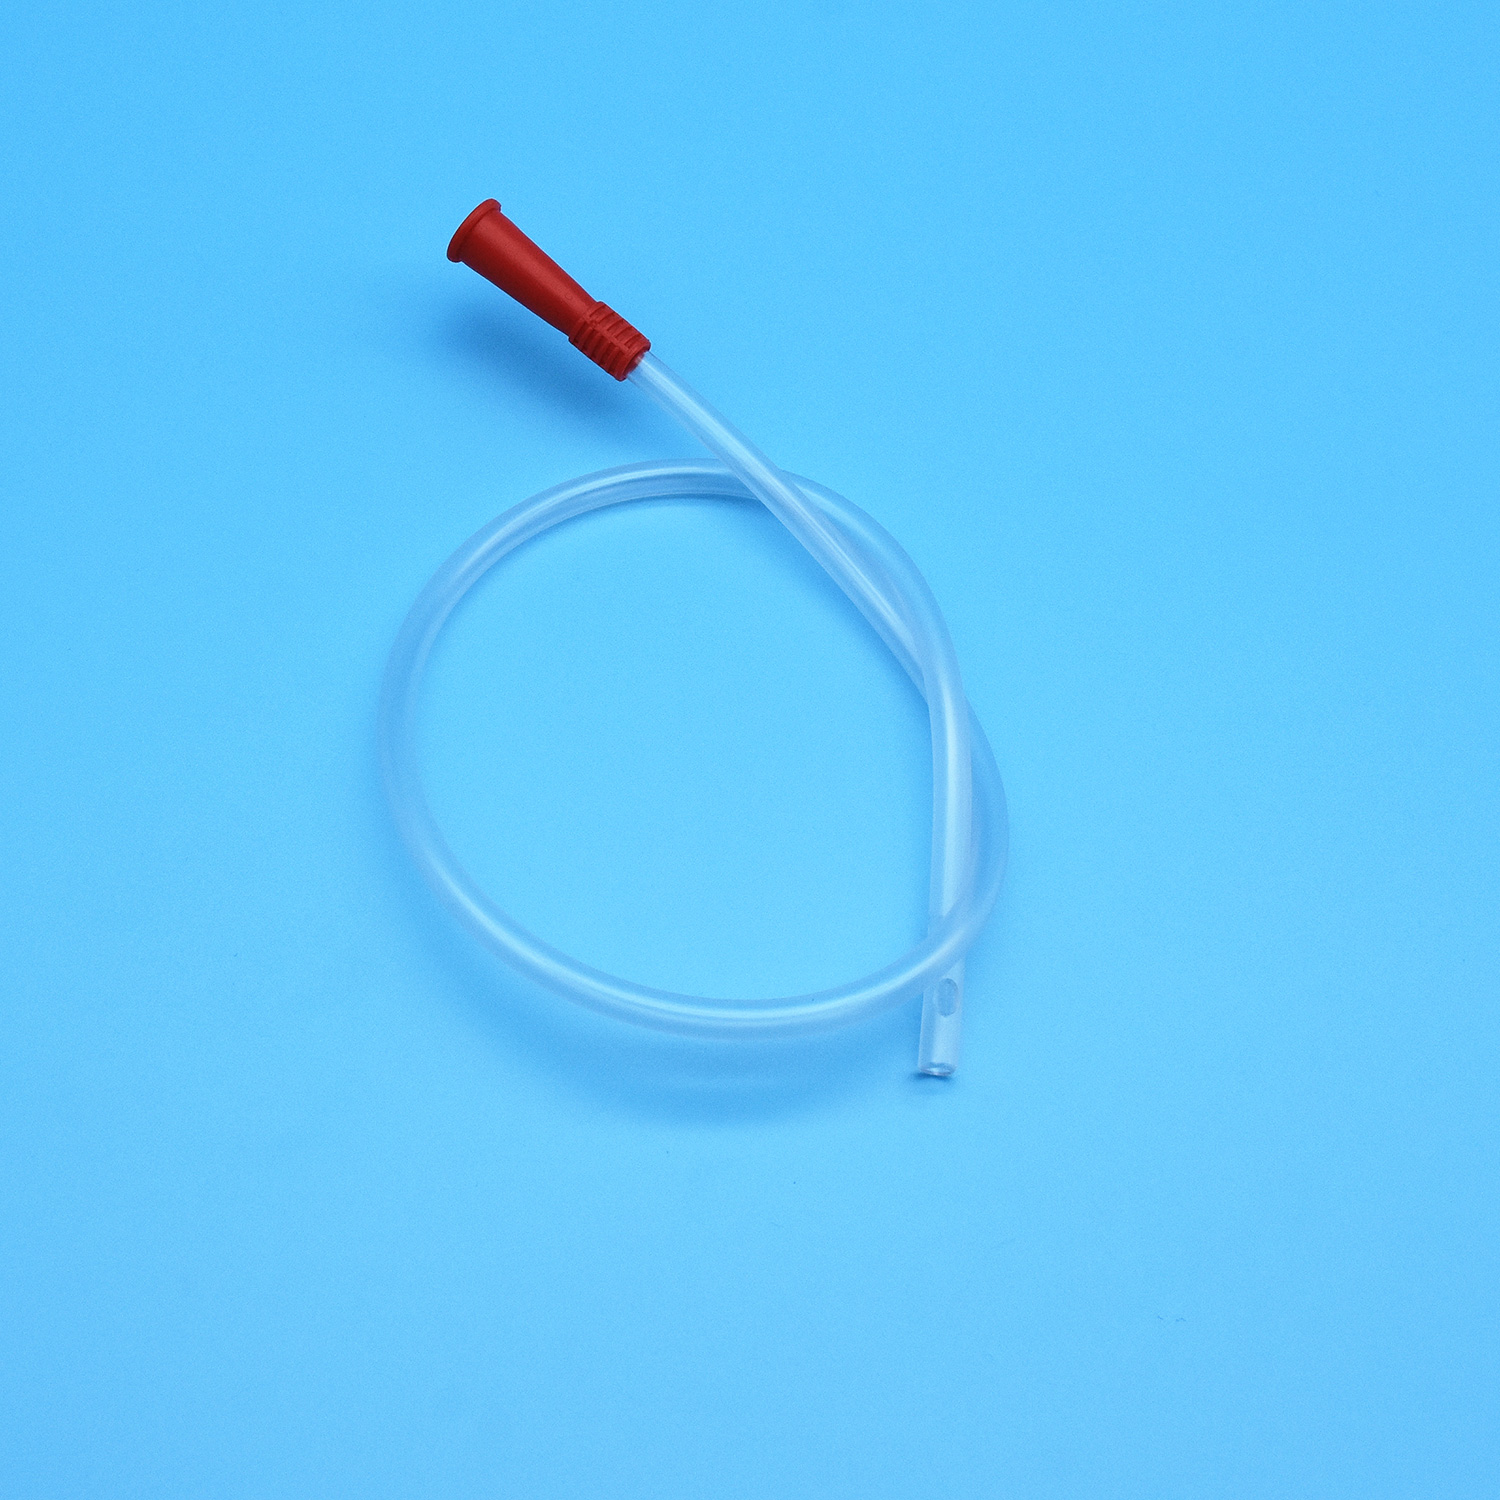 အသက်ရှုလမ်းကြောင်းကုထုံးအတွက် တစ်ခါသုံးဆေးဘက်ဆိုင်ရာကိရိယာ အောက်ဆီဂျင်ပေးပို့ခြင်း PVC စက်ရုံ ISO Suction Catheter ပေးသွင်းသူ တစ်ကြိမ်သုံး